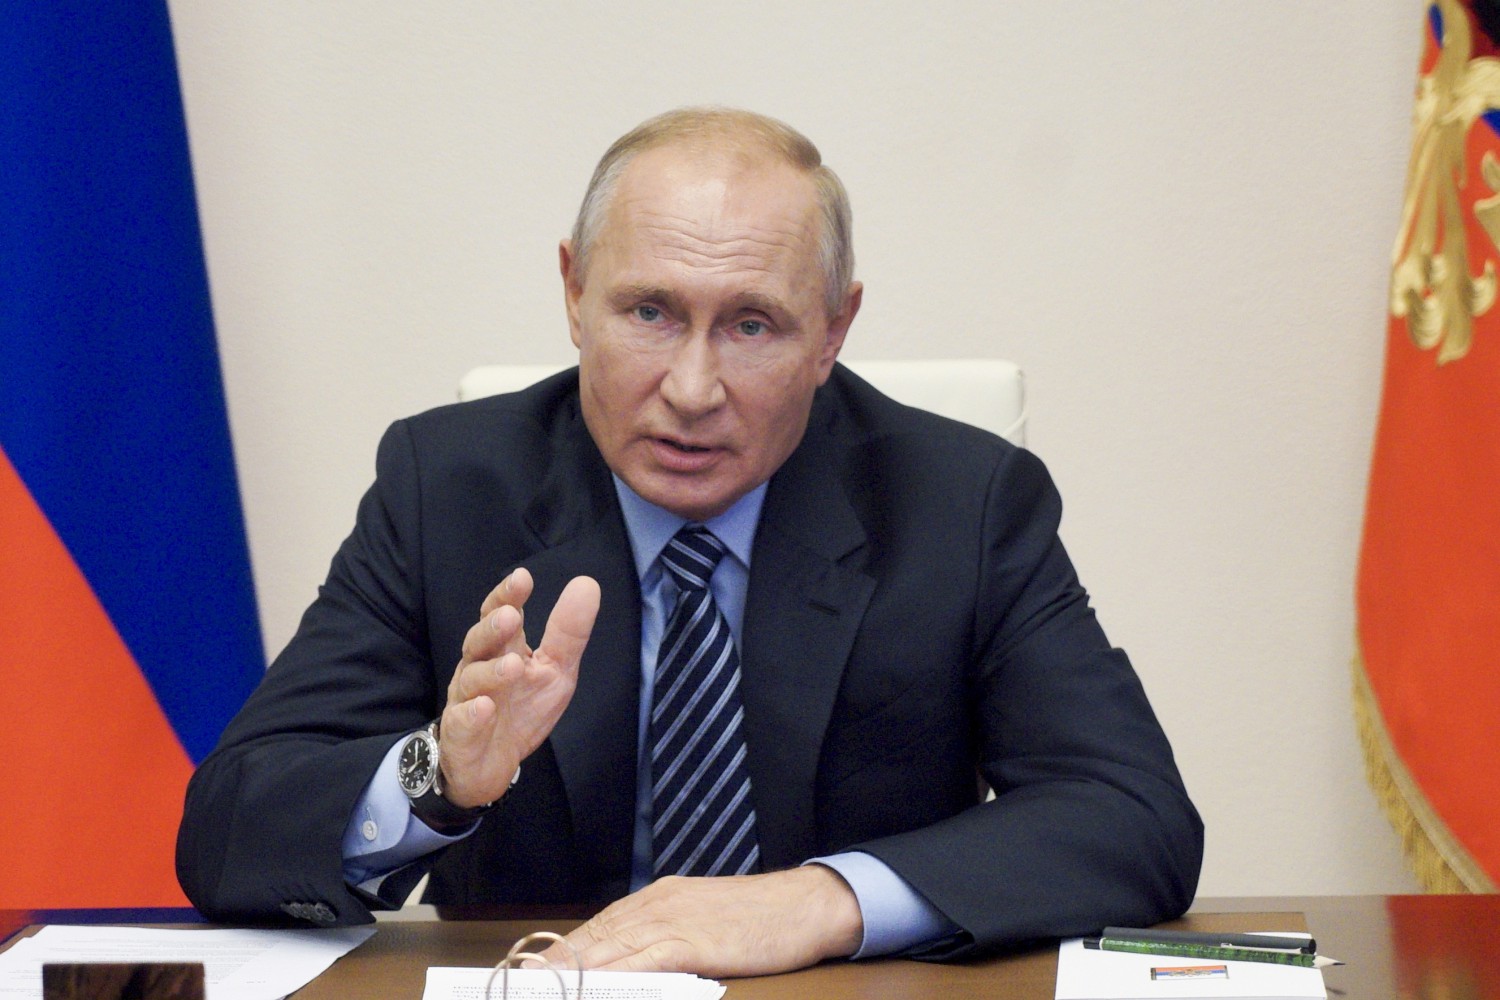 Coronavirus, Vladimir Putin annuncia "Russia primo Paese a registrare il vaccino"